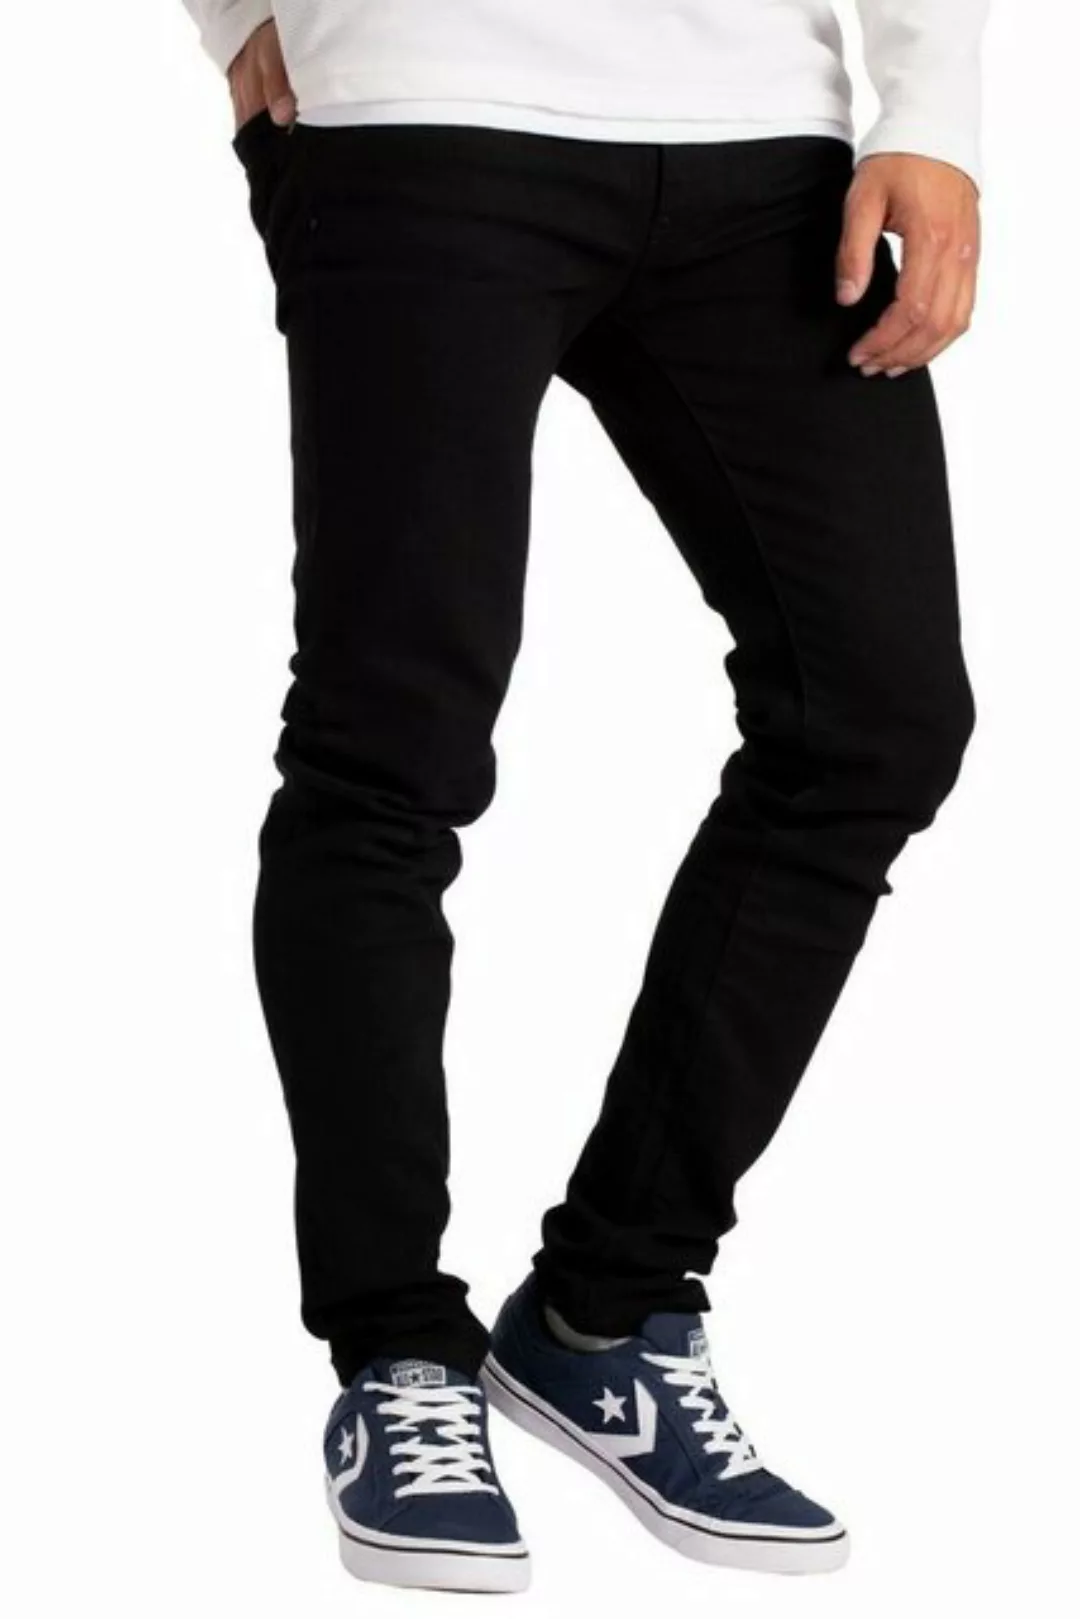 BlauerHafen Slim-fit-Jeans Herren Slim Fit Jeanshose Stretch Designer Hose günstig online kaufen